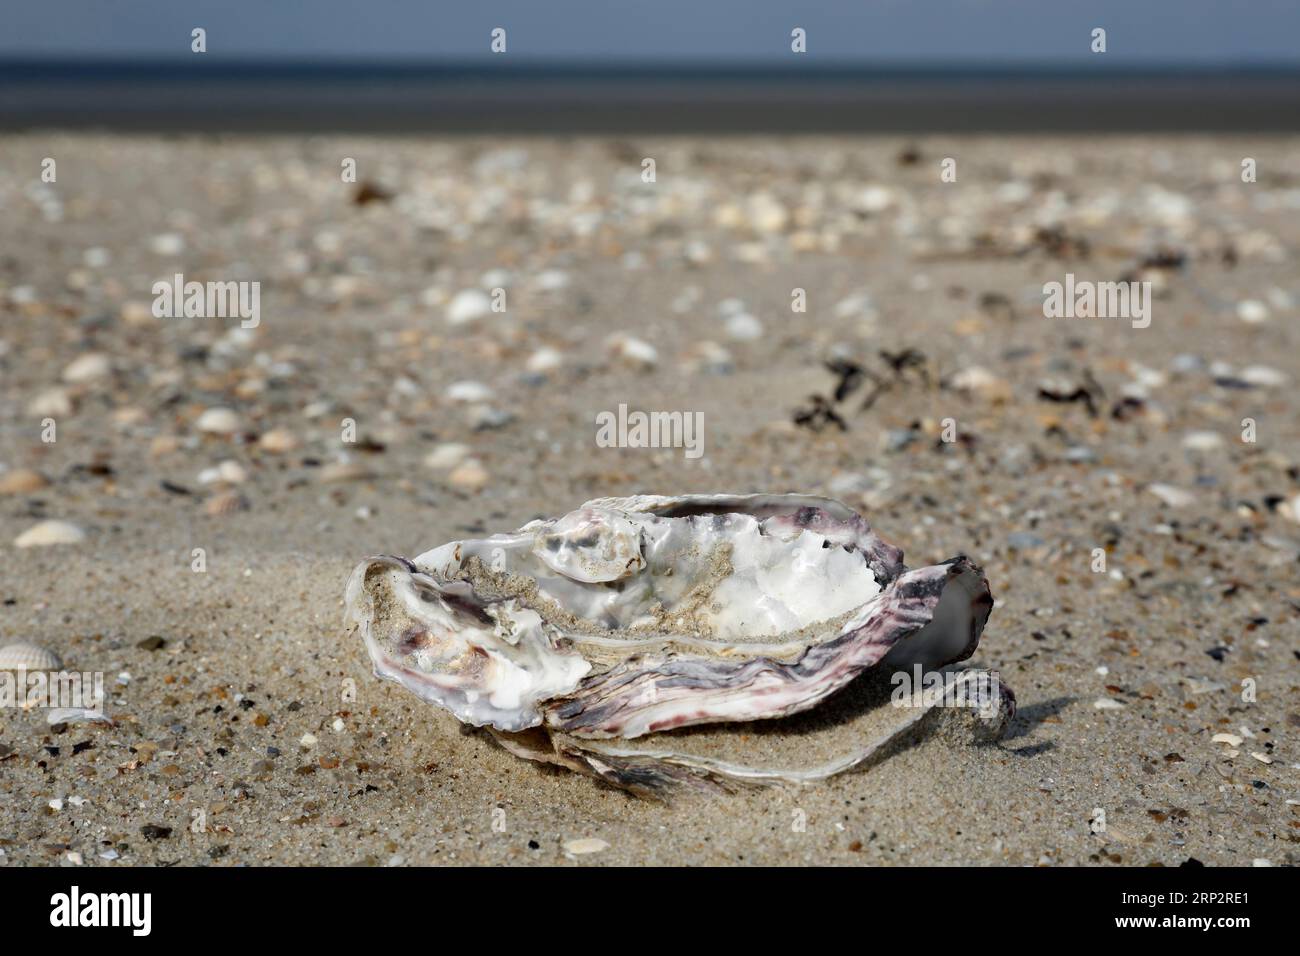 Guscio dell'ostrica del Pacifico (Magallana gigas) (Syn.: Crassostrea gigas), Minsener Oog, bassa Sassonia, Germania Foto Stock